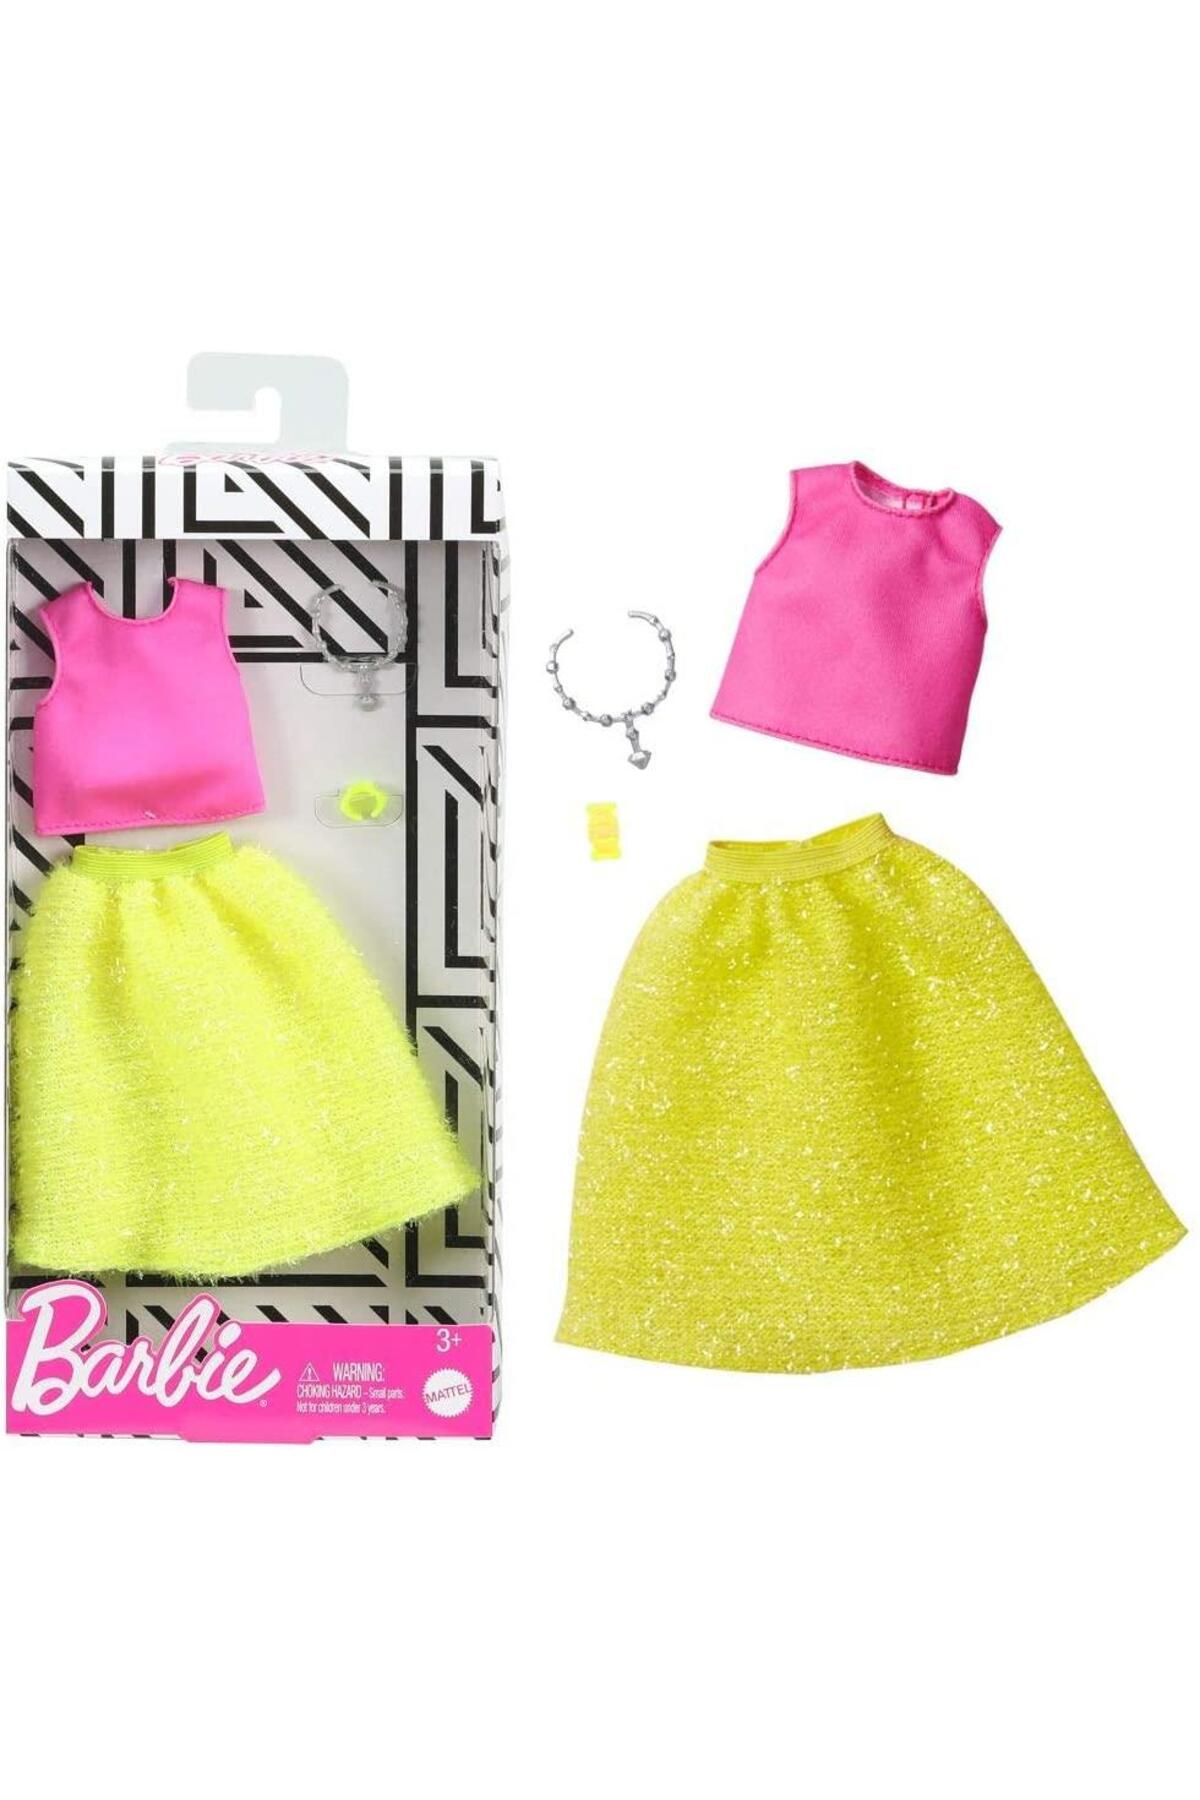 Barbie 'nin Son Moda Kıyafetleri Fyw85-ghw82 Fyw85